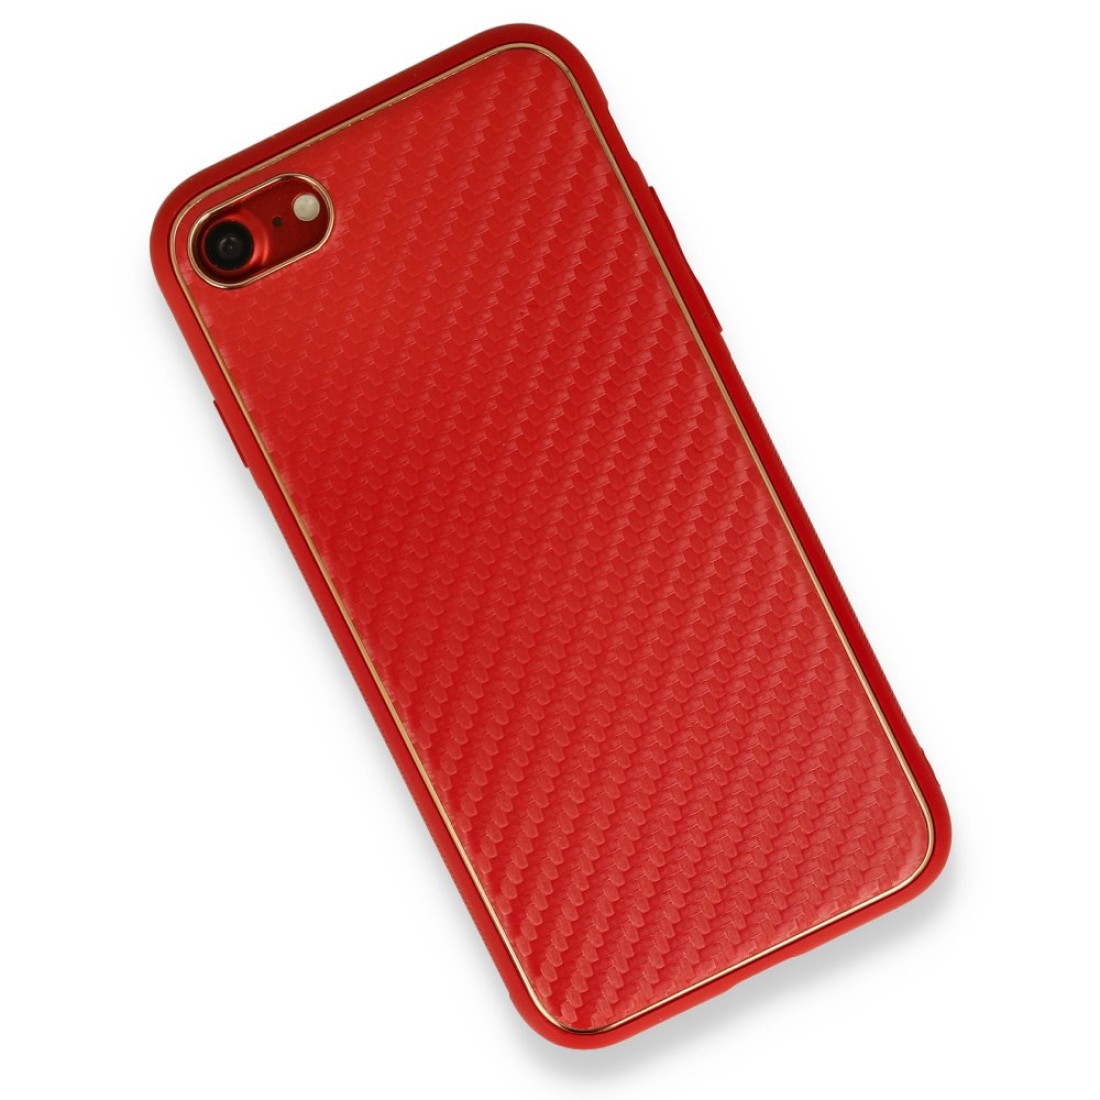 Apple iPhone 8 Kılıf Coco Karbon Silikon - Kırmızı